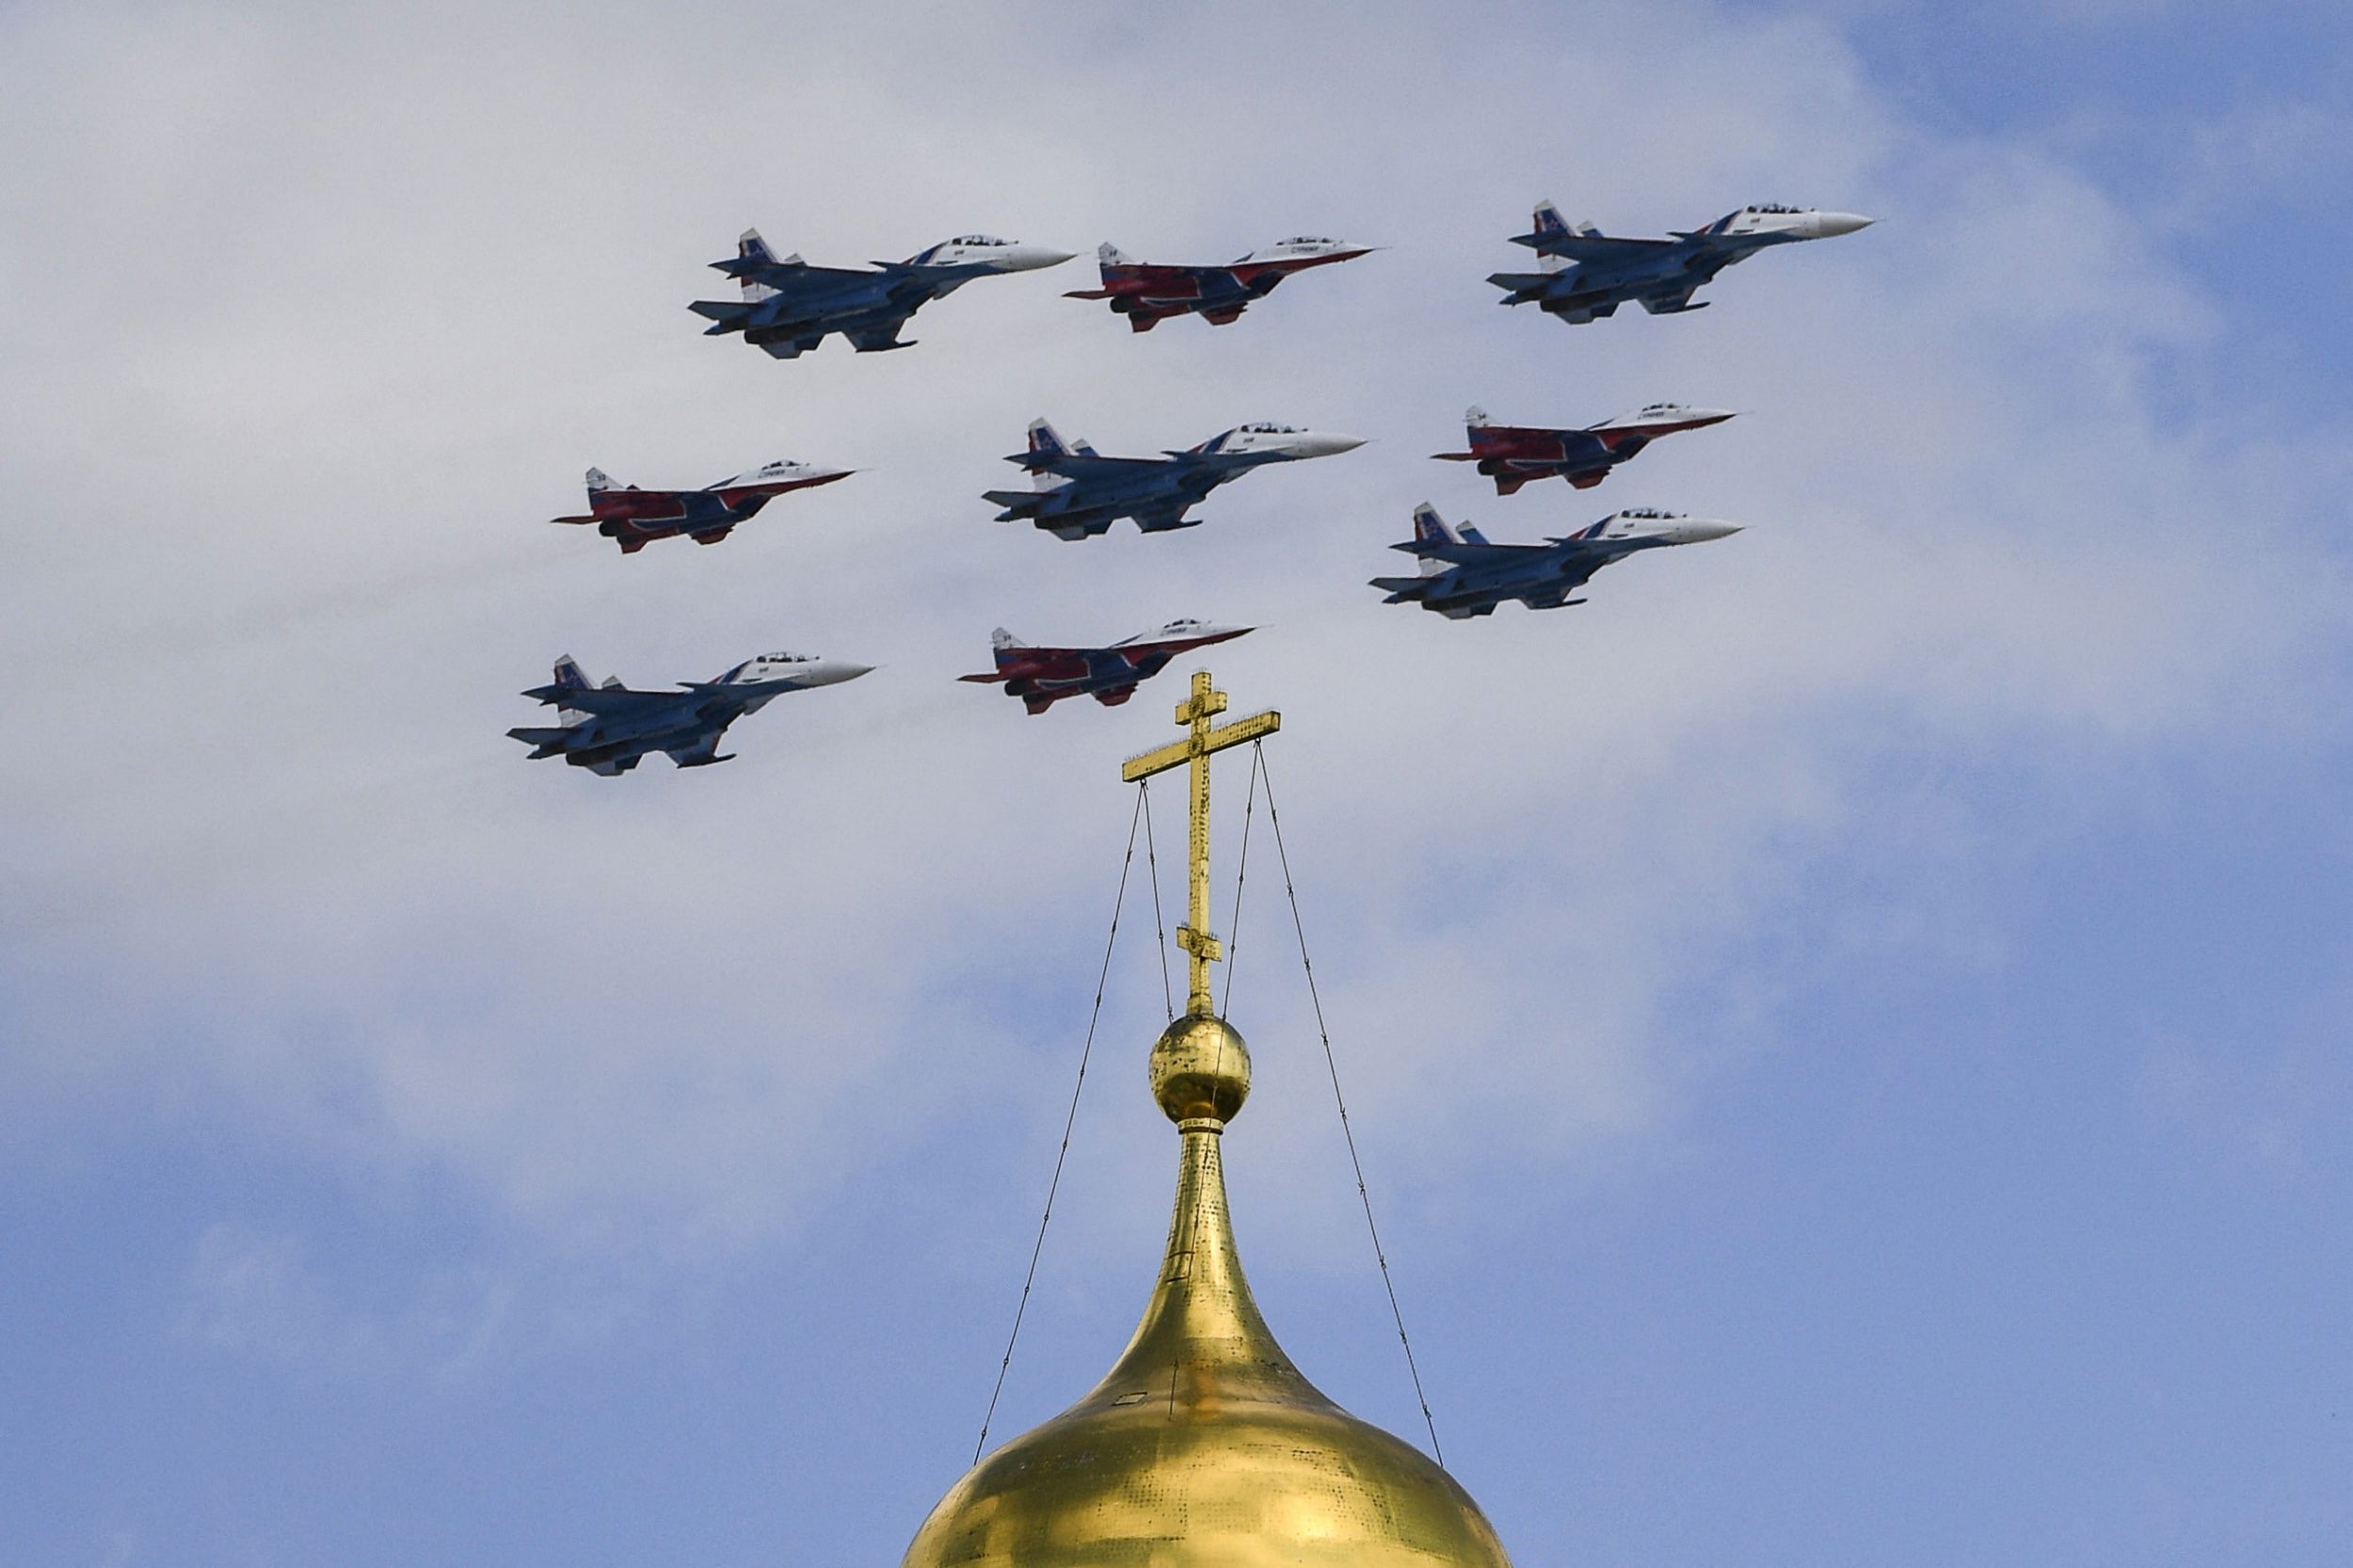 Aviónes de combate rusos MiG-29 participan en un despliegue aéreo